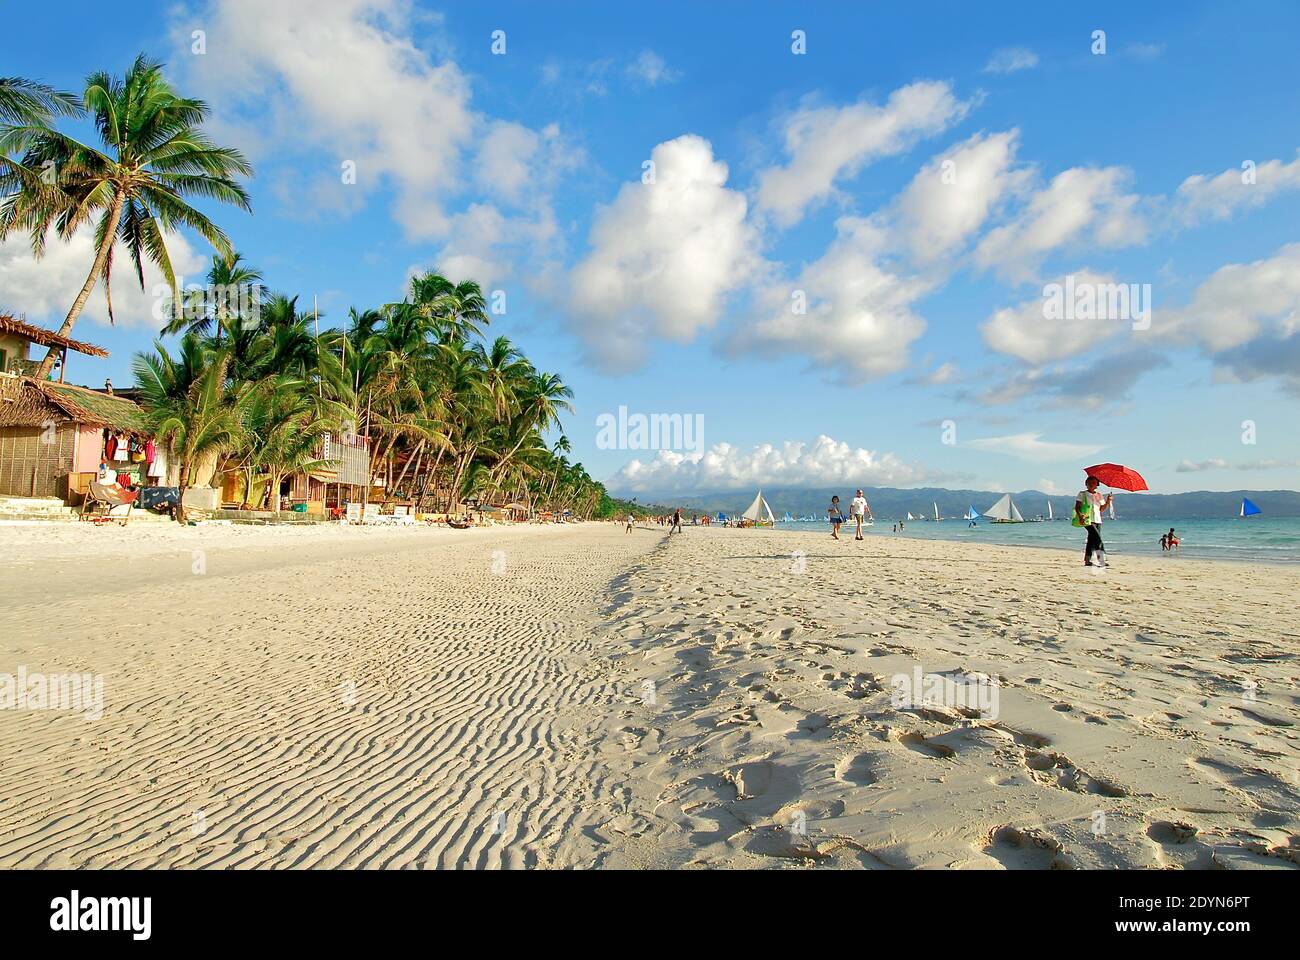 Wellen am leeren White Beach auf Boracay Island, Philippinen. Nur wenige Menschen und Segelboote sind vorhanden, mit blauem Himmel, Palmen Hintergrund Stockfoto